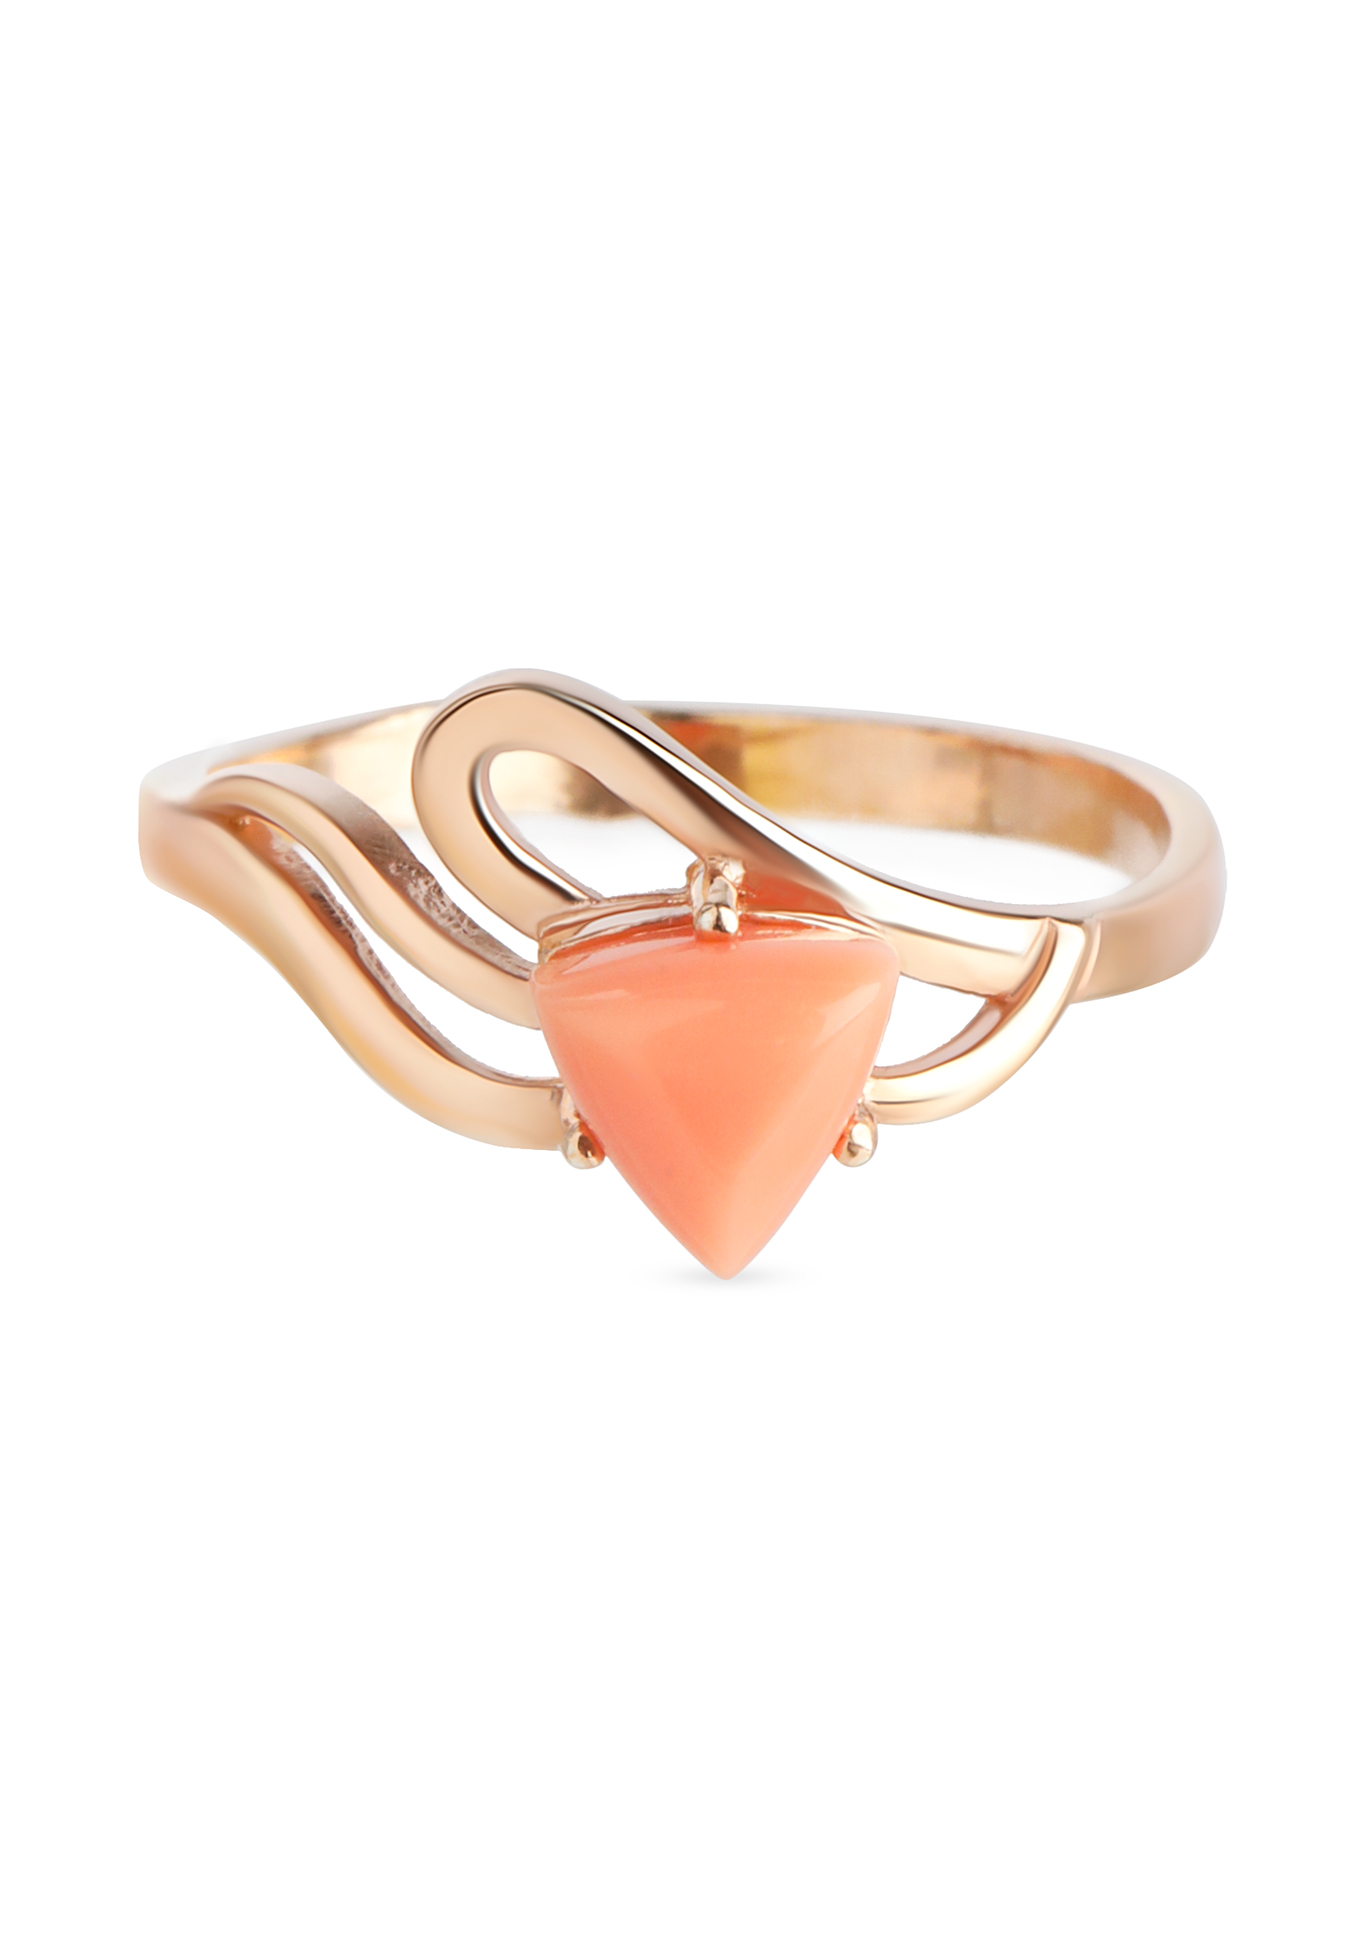 Серебряное кольцо "Бланш" Бриллианит. Серебряная линия, цвет розовый, размер 19 - фото 1